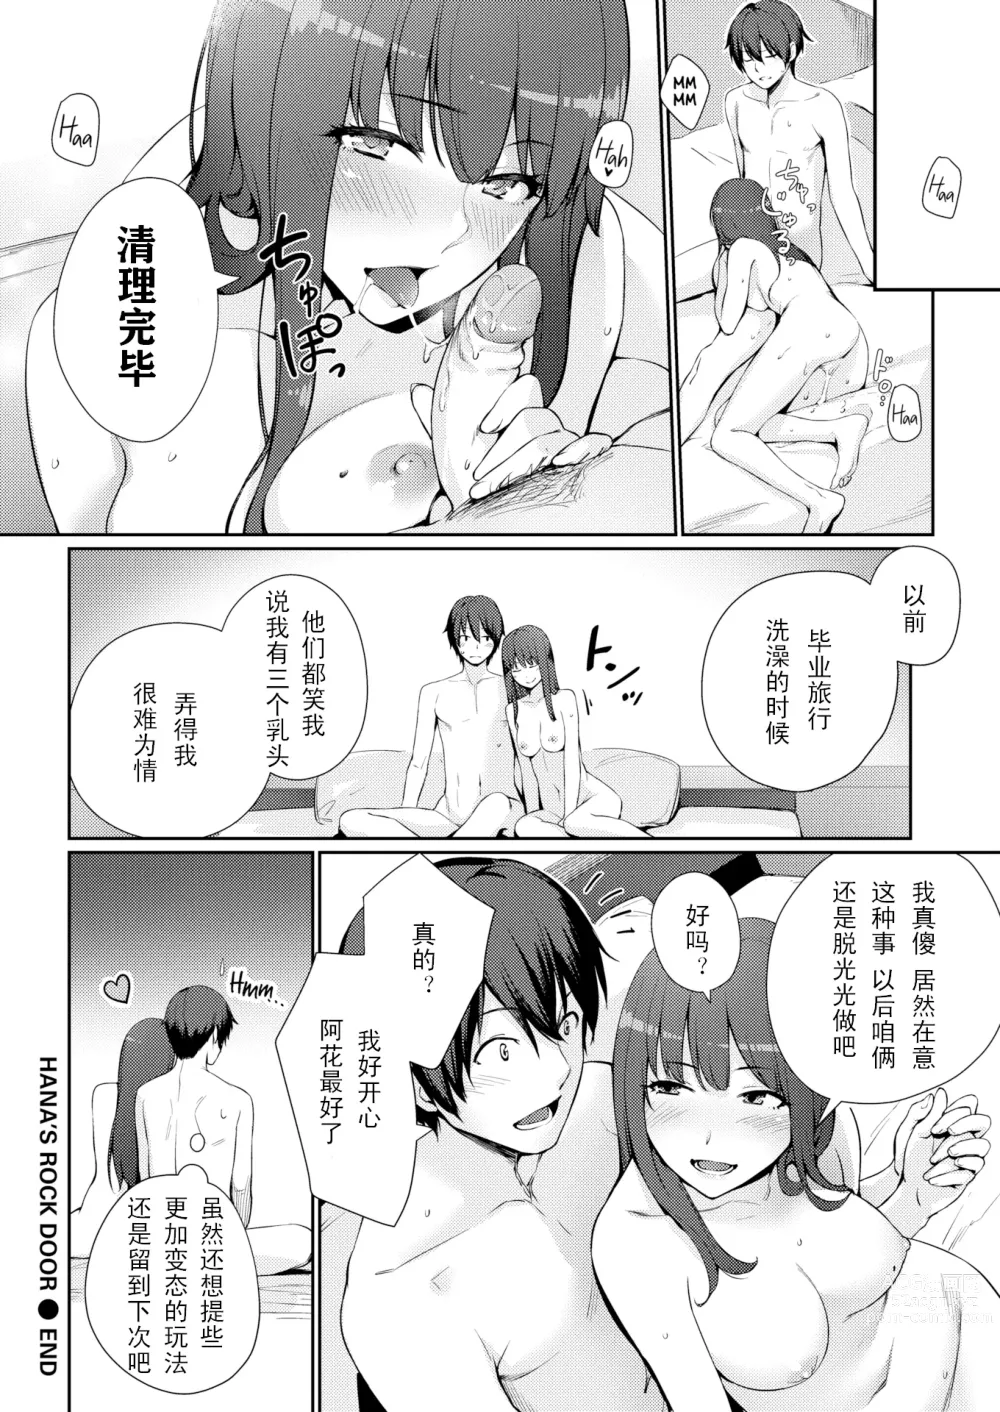 Page 16 of manga ハナのイウト